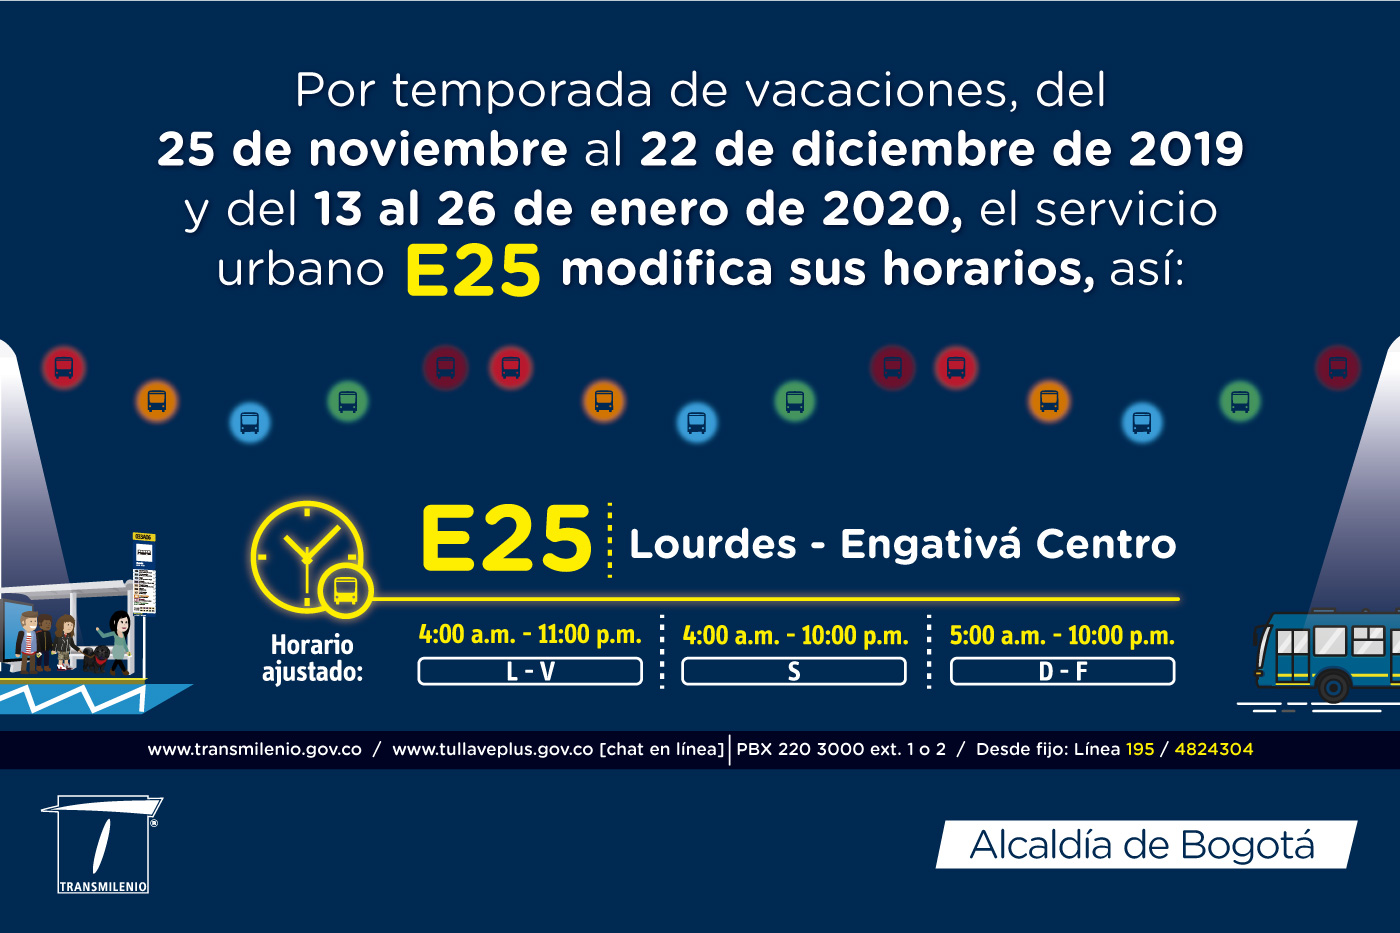 E25 Lourdes Engativá Centro horario ajustado para navidad